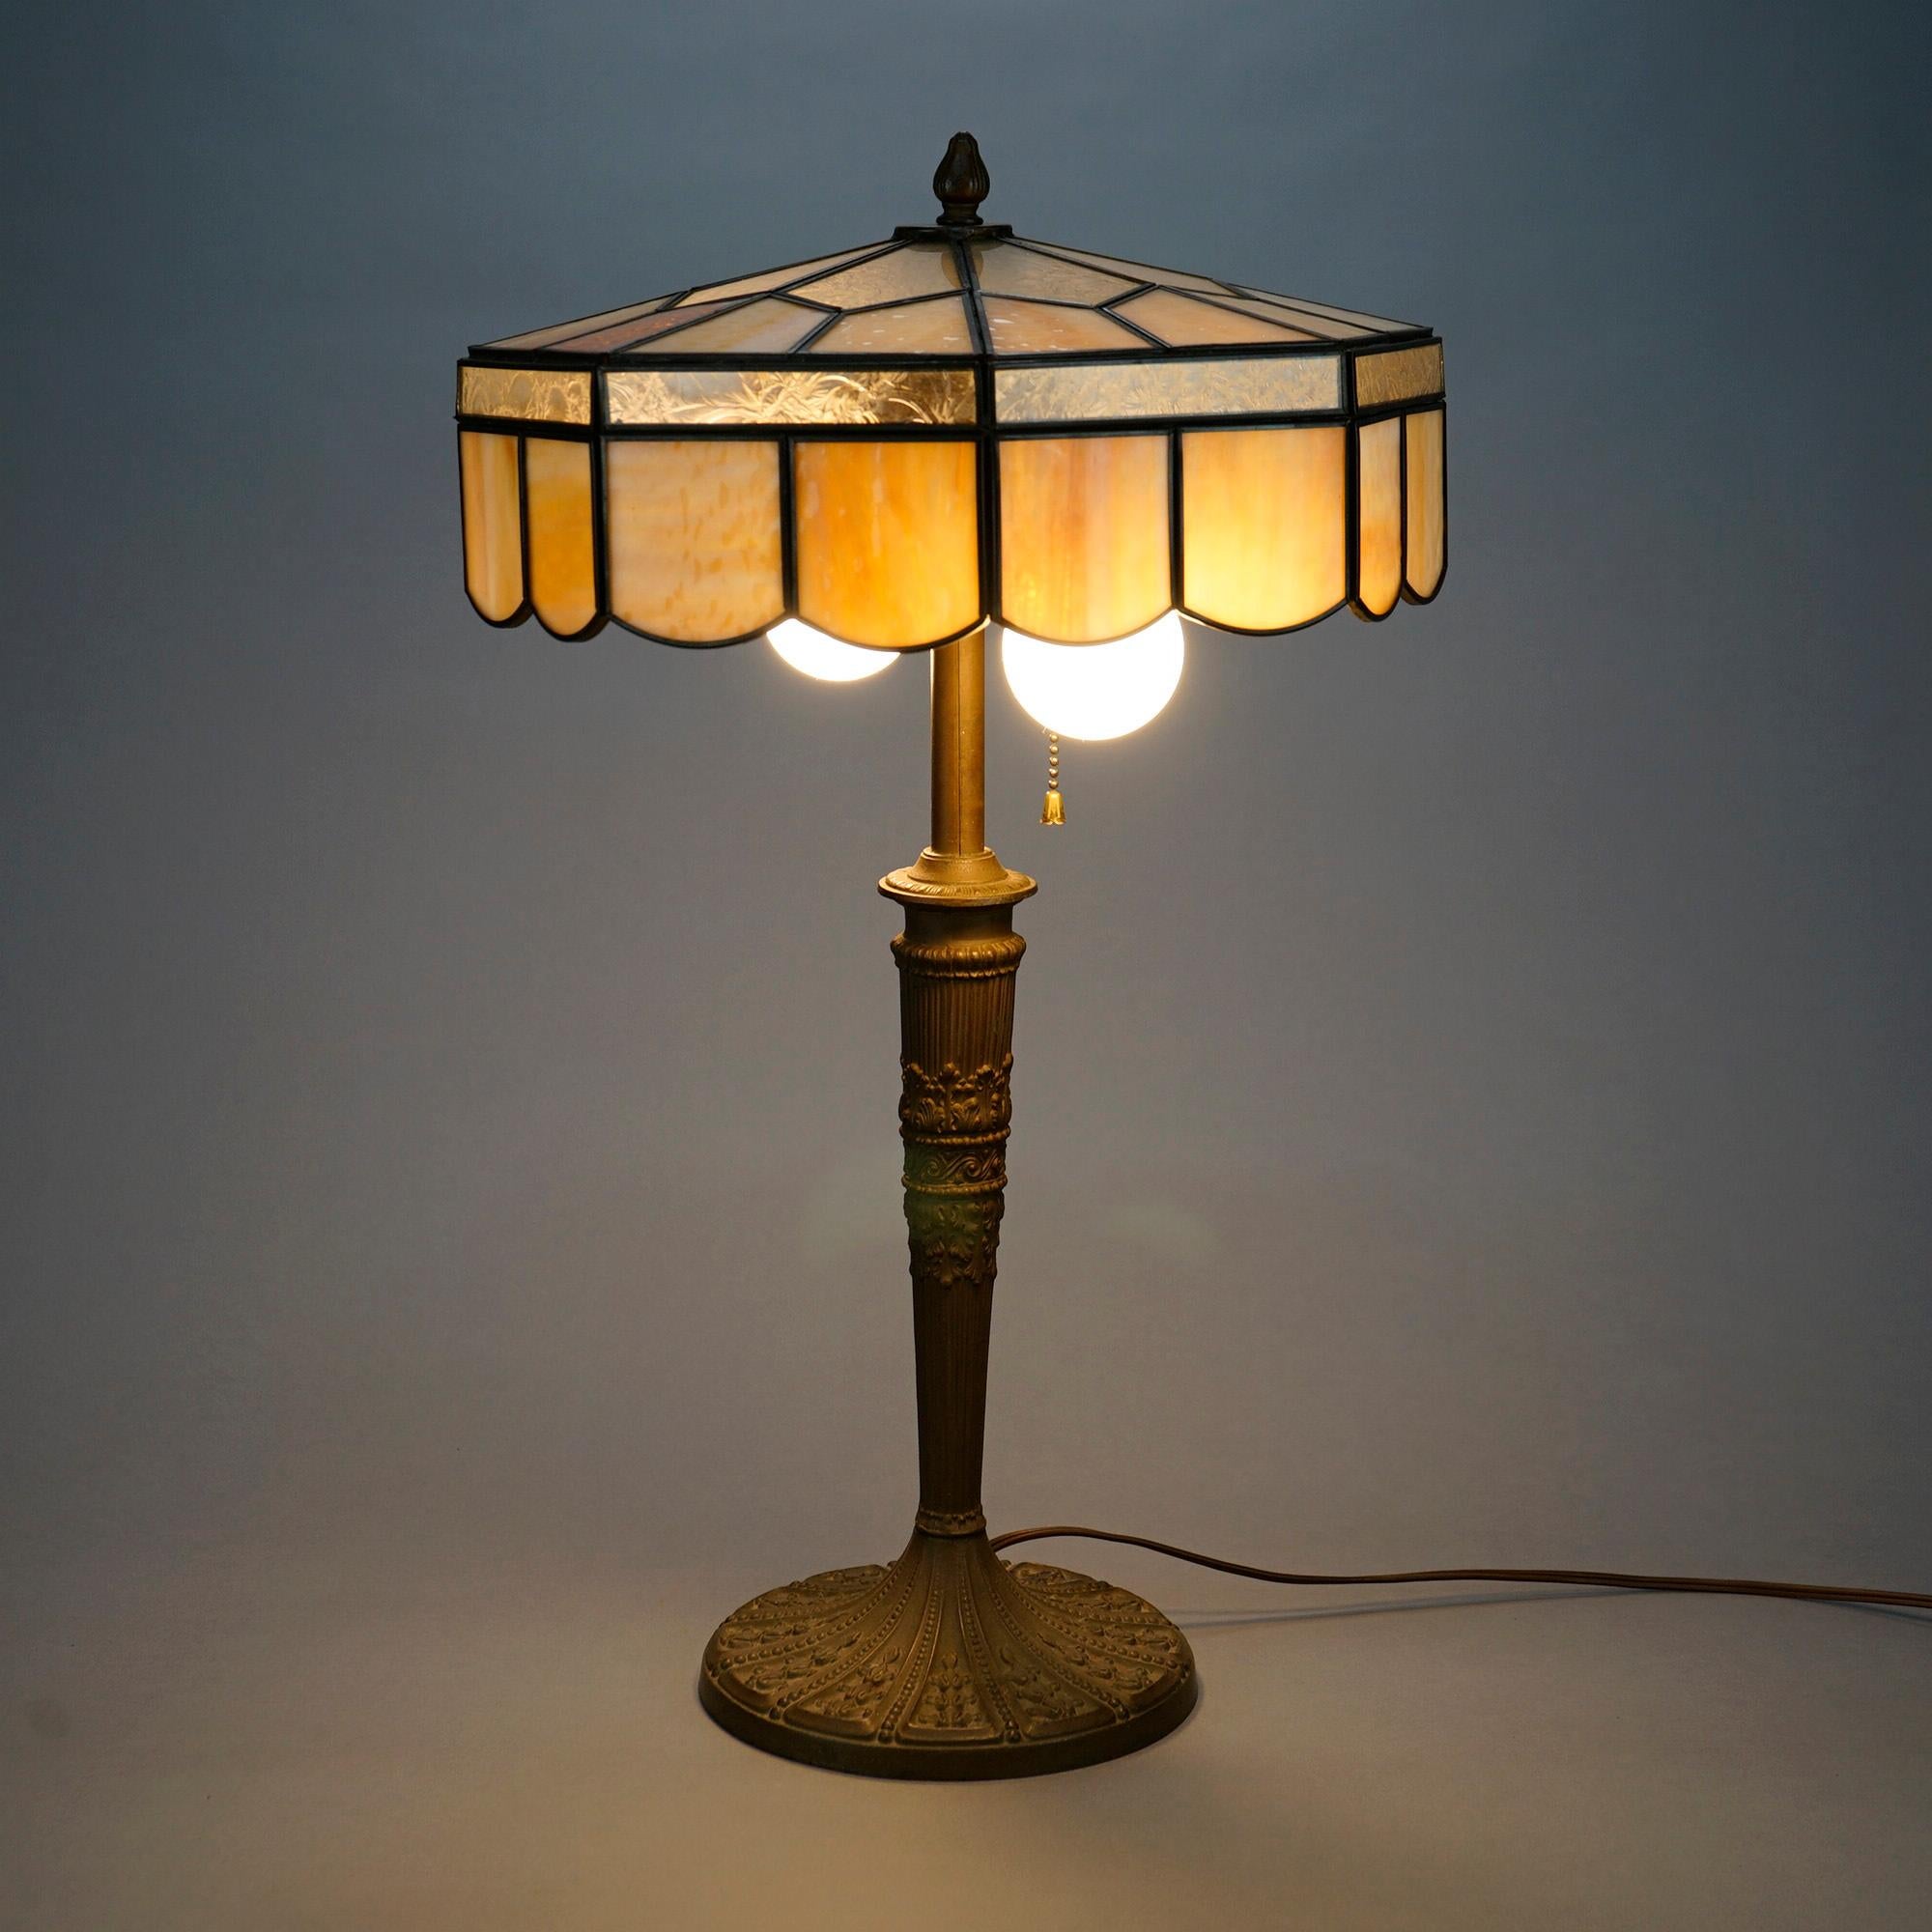 Lampe de table Arte Antiques dans la manière de Bradley et Hubbard offre un abat-jour en verre scorie sur une base en fonte à double douille, c1920

Dimensions : 22,5'' H x 12,75'' L x 12,75'' P.